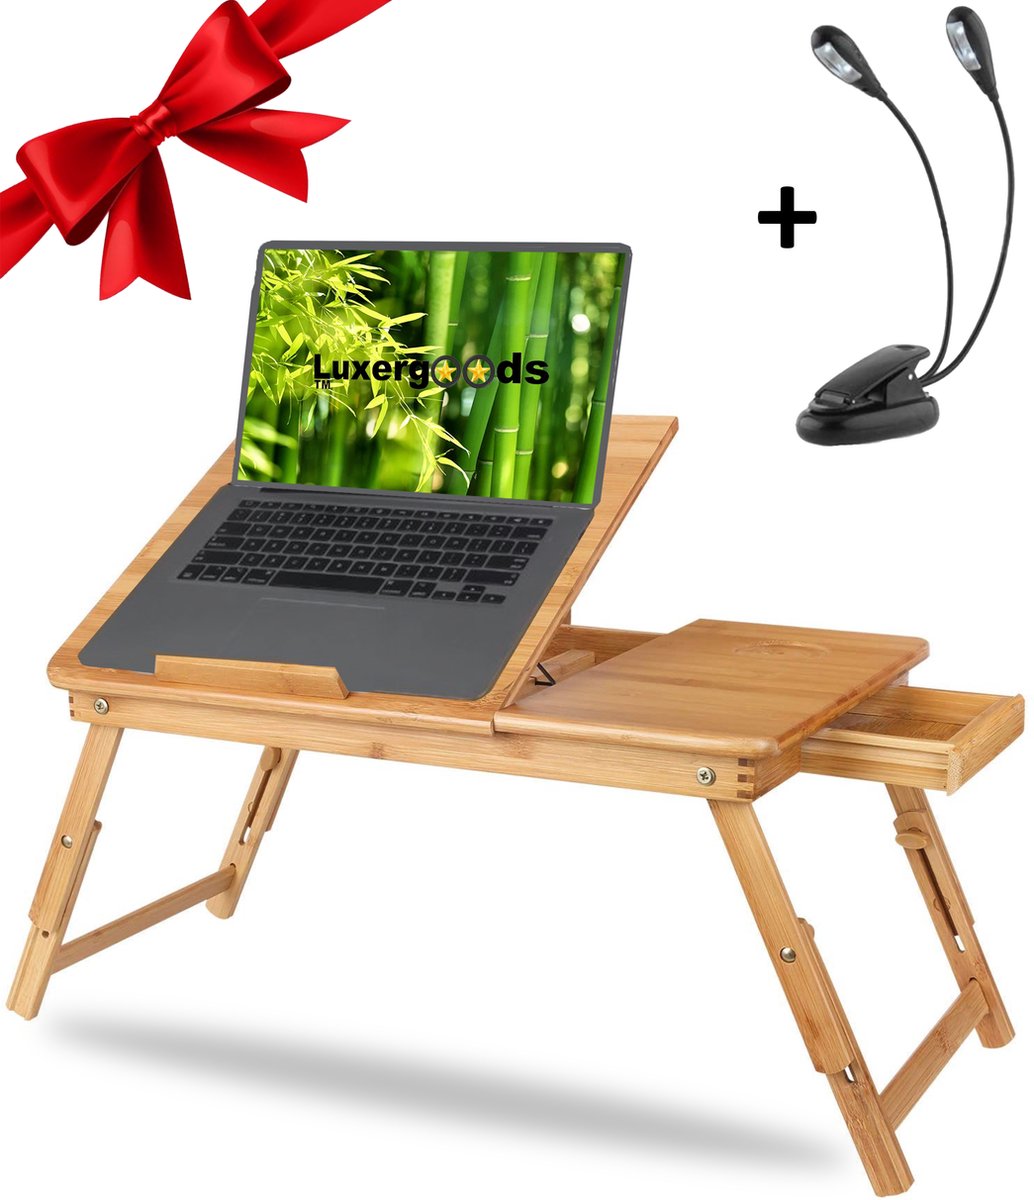 Lenx 2 IN 1 Bedtafel/Laptopstandaard - 100% BAMBOE - Nieuw Model - Cadeautip - Laptoptafel - Bank tafeltje - Laptop verhoger - Lenx